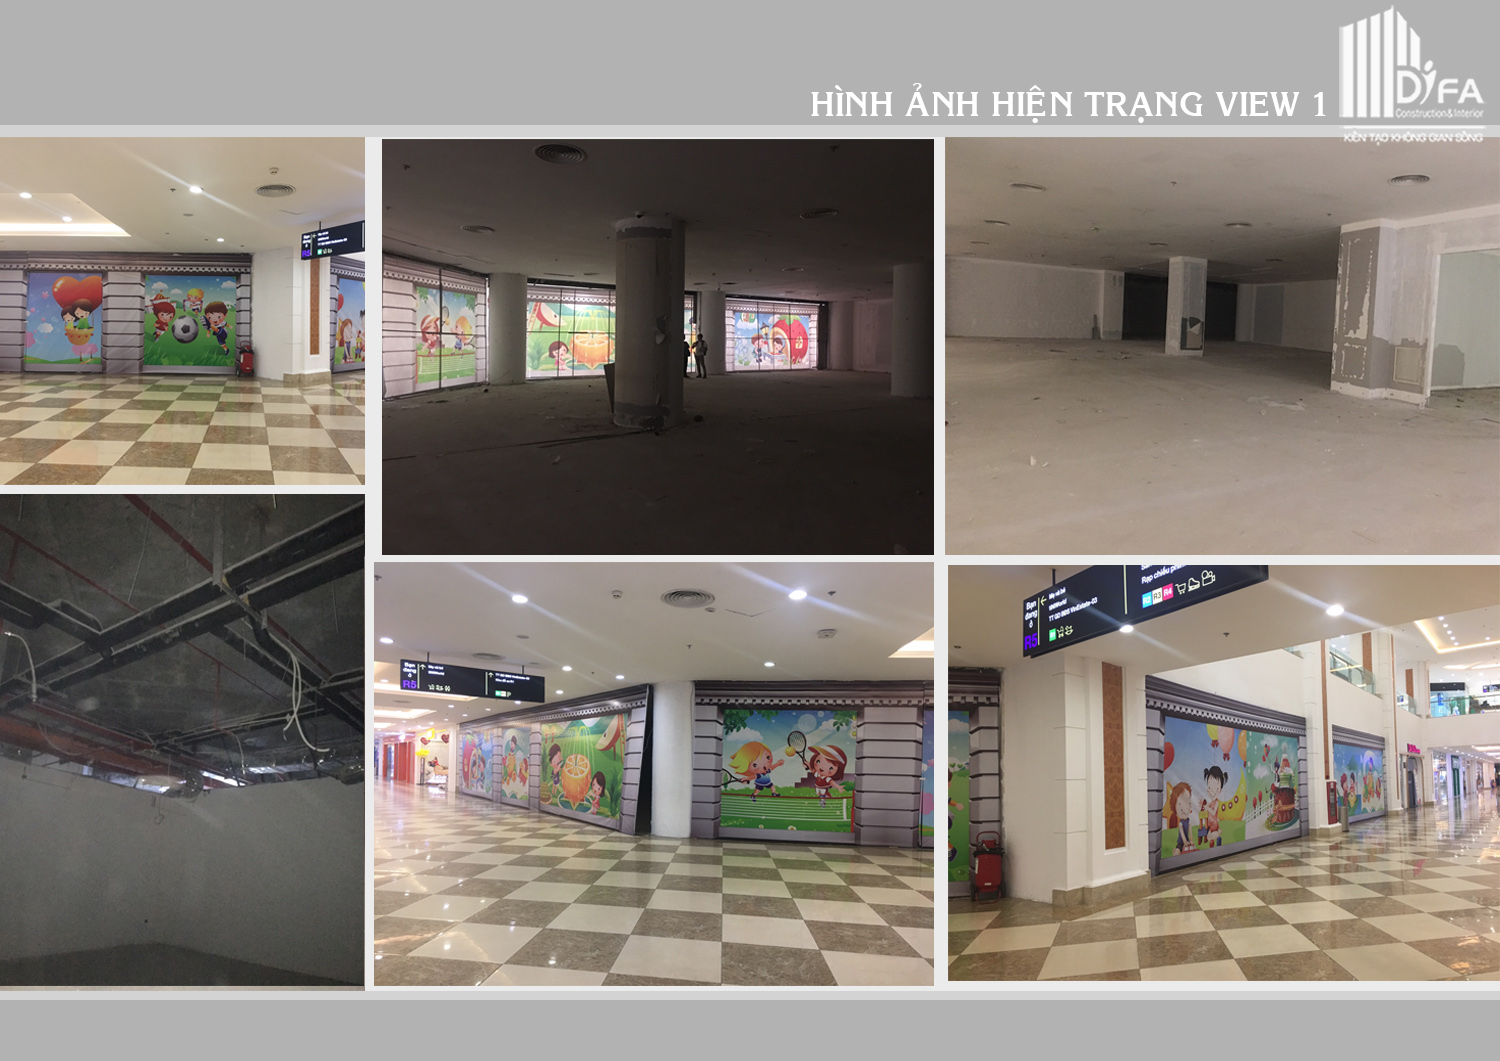 Xây dựng showroom đẹp - Hoàn thành Jang In - Royal City| Diệp Gia